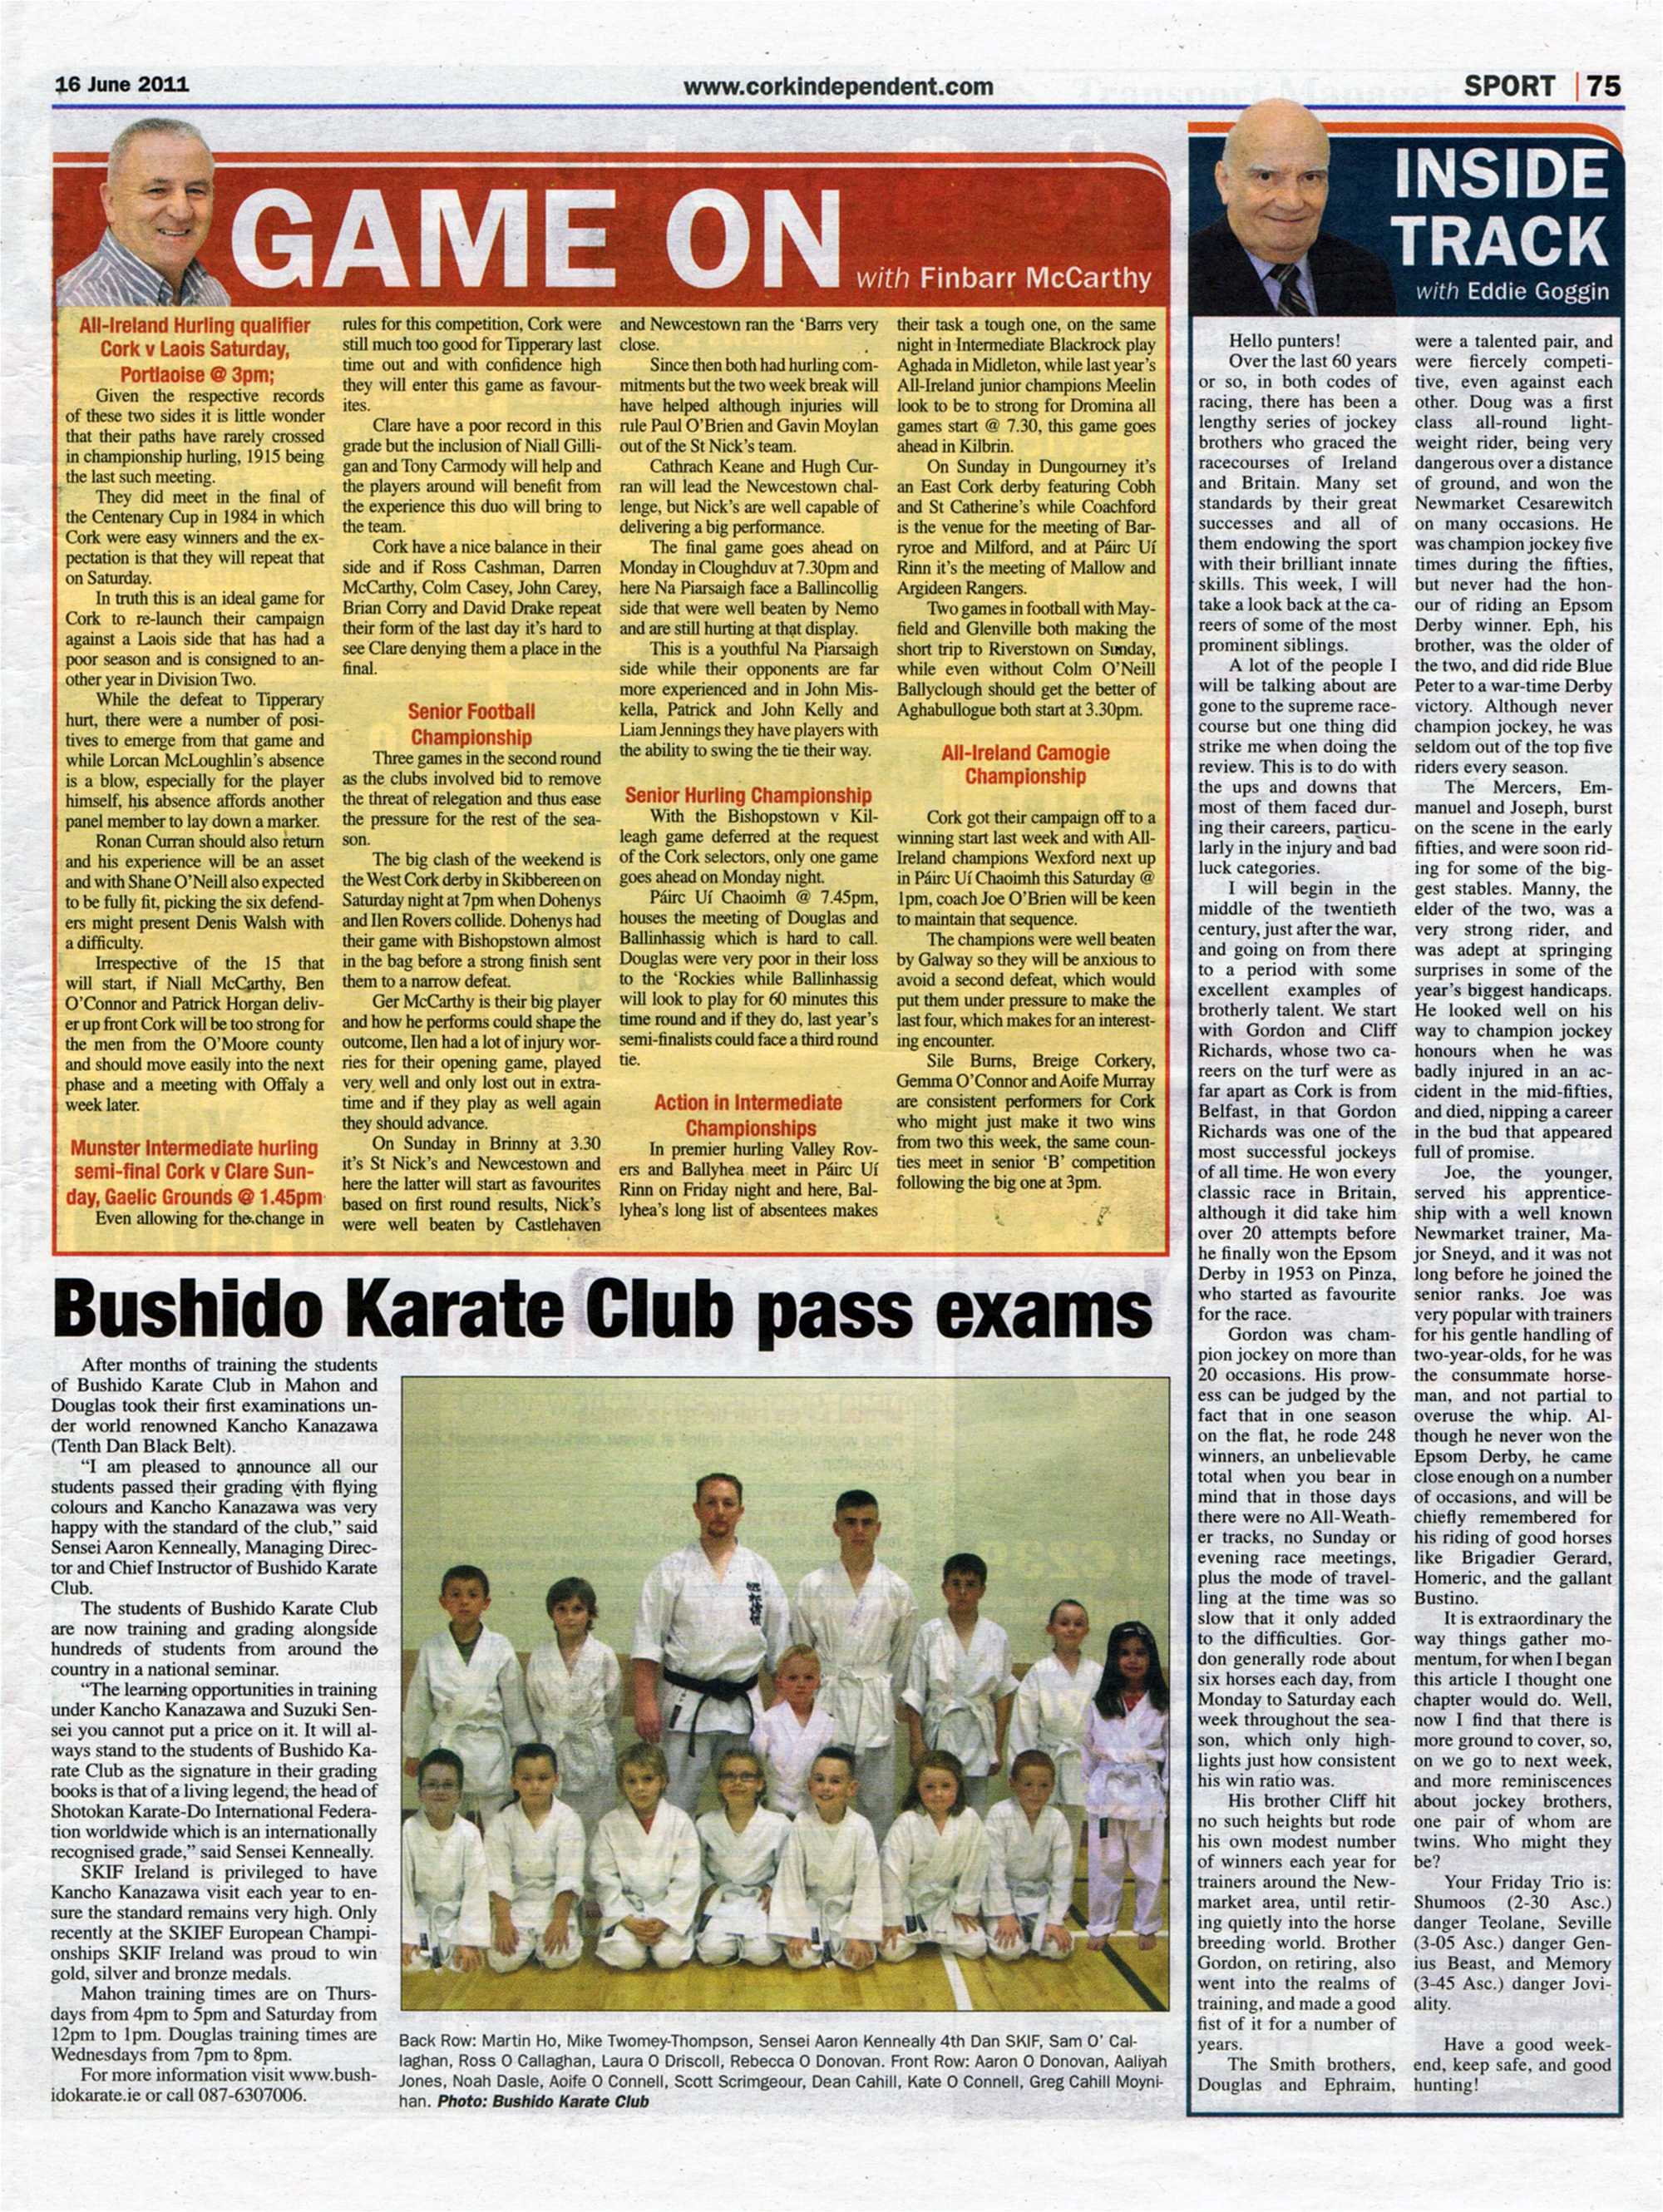 Cork Independant Feature - Bushido Karate Club pass exams